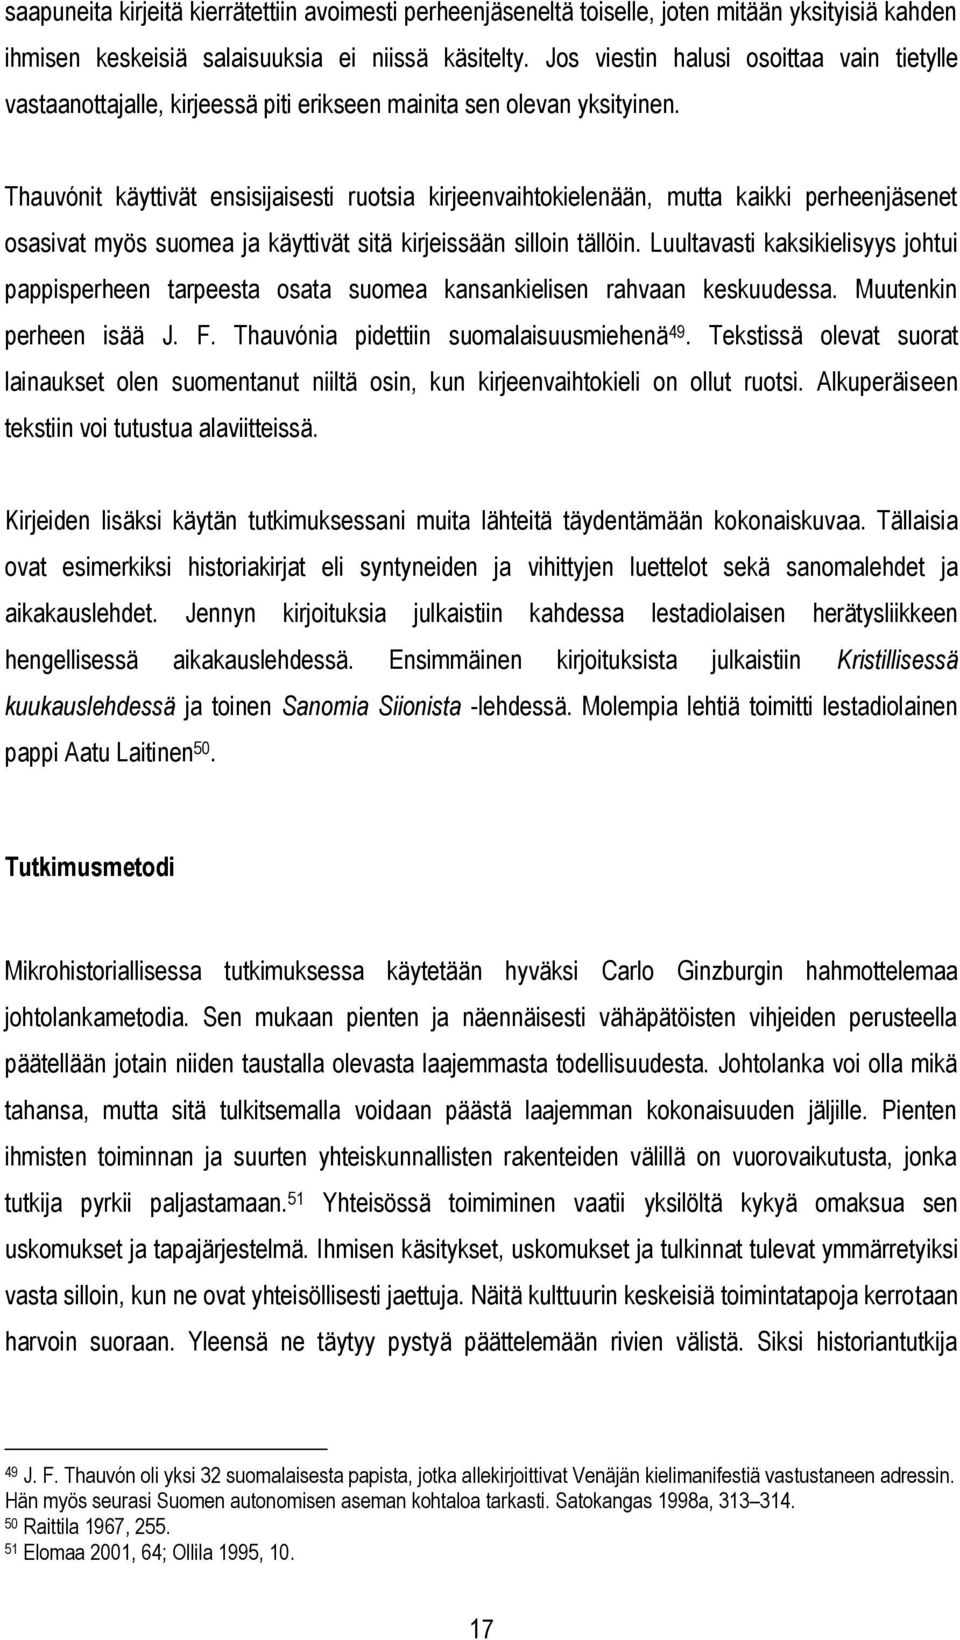 Thauvónit käyttivät ensisijaisesti ruotsia kirjeenvaihtokielenään, mutta kaikki perheenjäsenet osasivat myös suomea ja käyttivät sitä kirjeissään silloin tällöin.